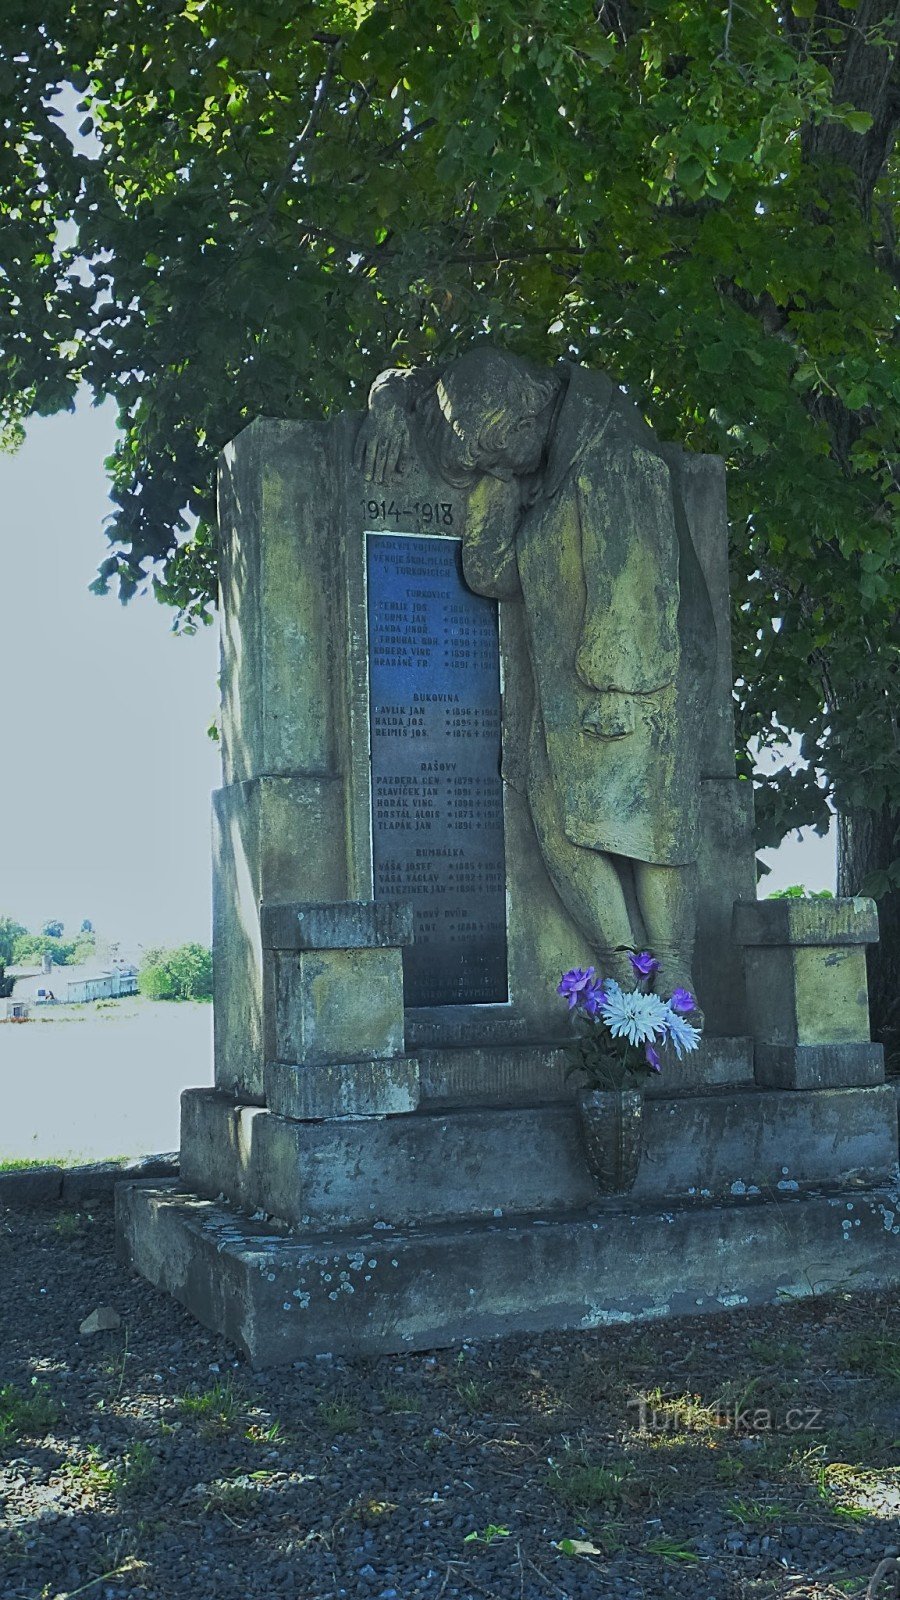 Pe monument sunt gravate 19 nume de soldați căzuți din satele din jur